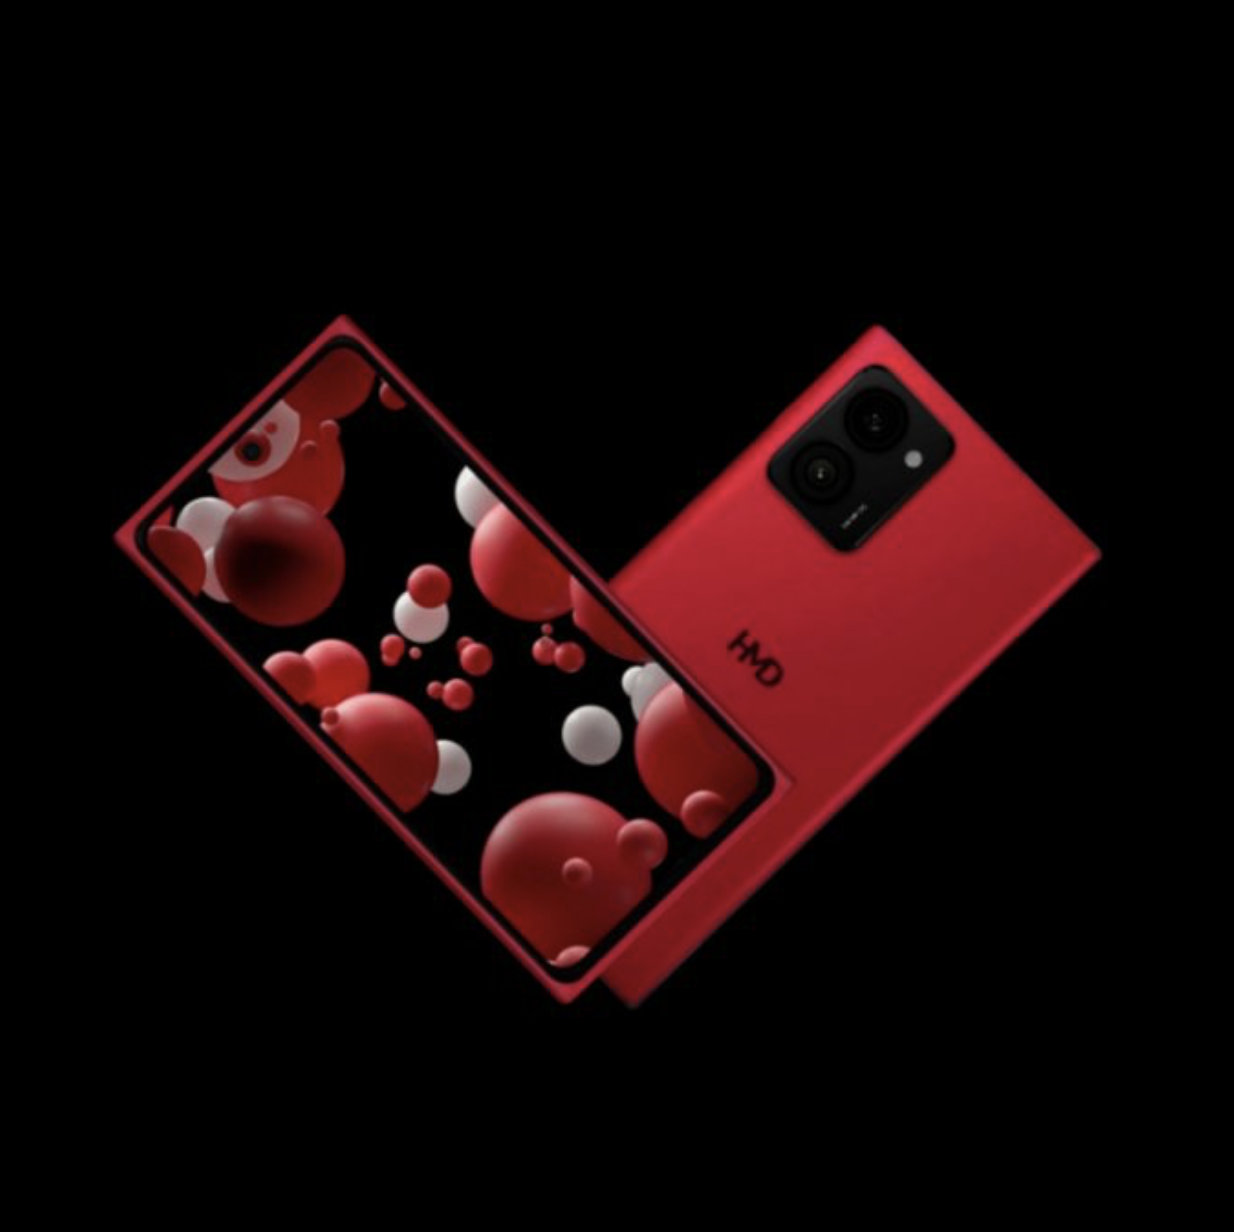 含 Lumia“复刻手机”/Fusion 模块化机型，HMD 多款新机售价 / 更多渲染图曝光